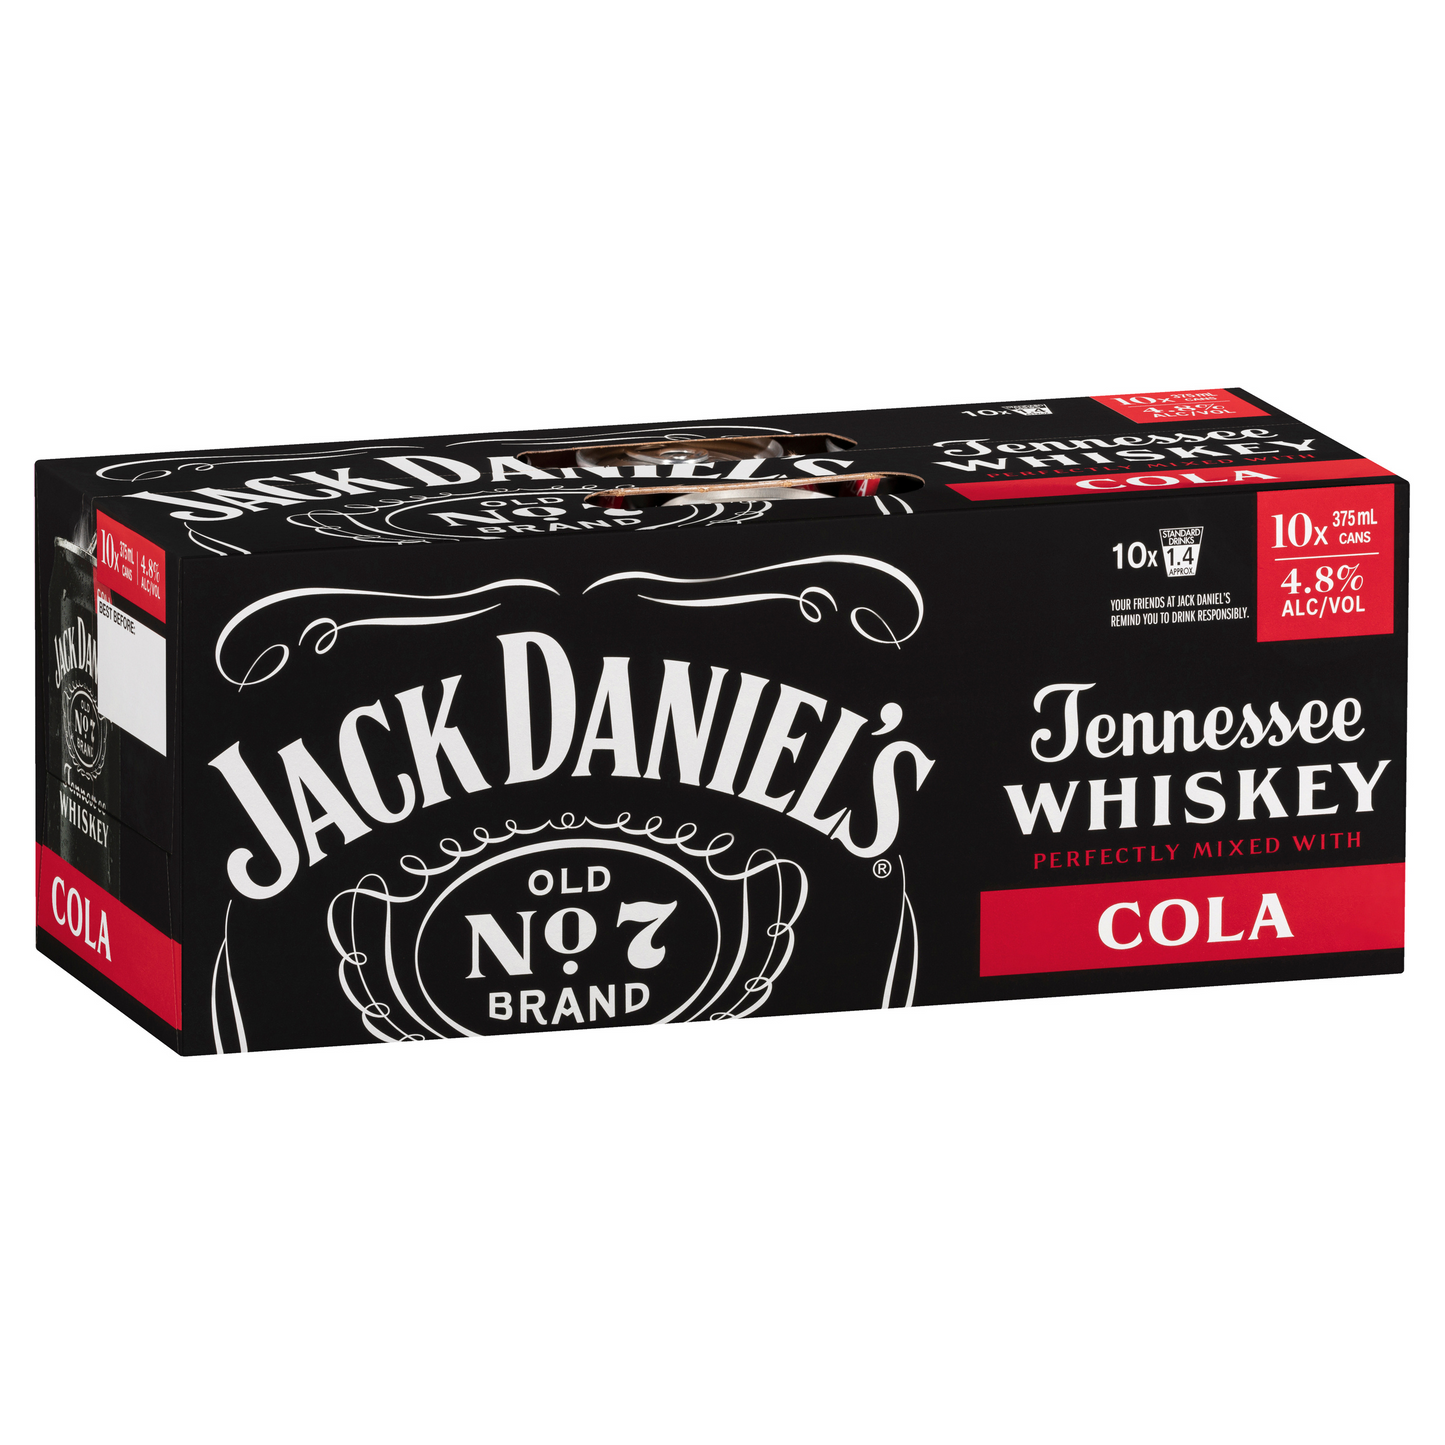 Jack Daniel's & Cola 10x375mL cans